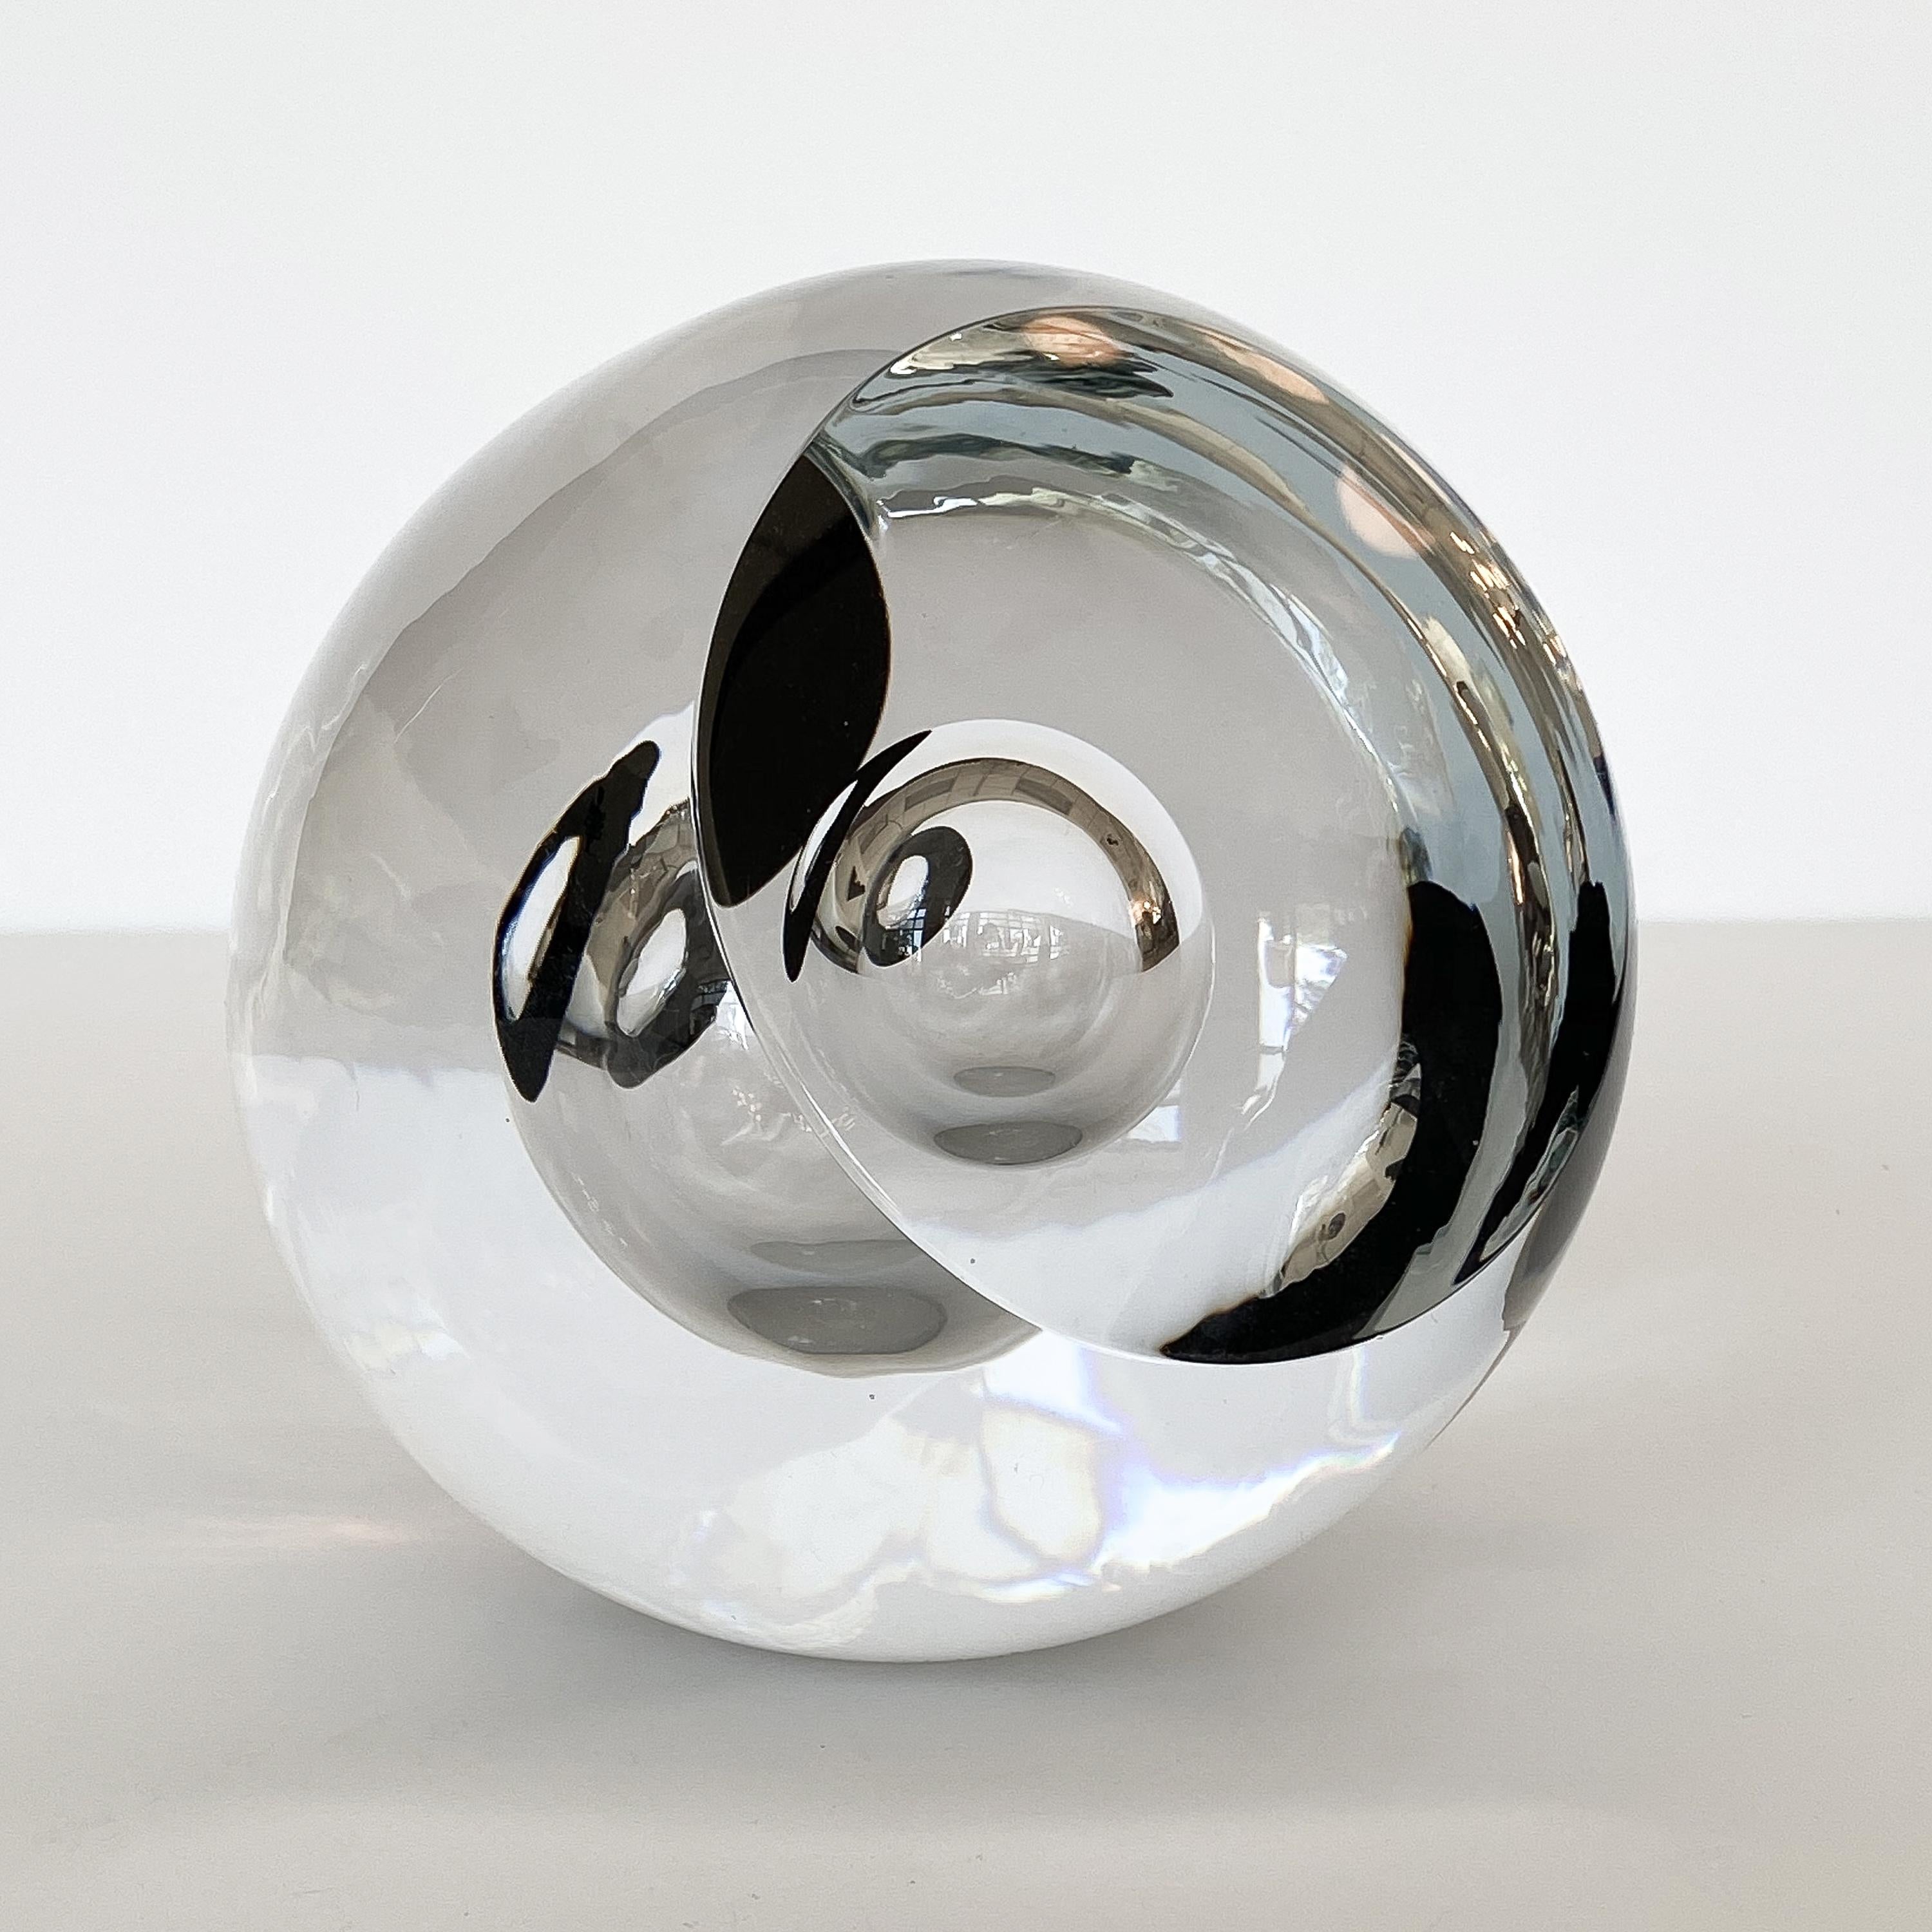 Contemporary Studio Ahus Art Glass Sculpture by Lennart Nissmark